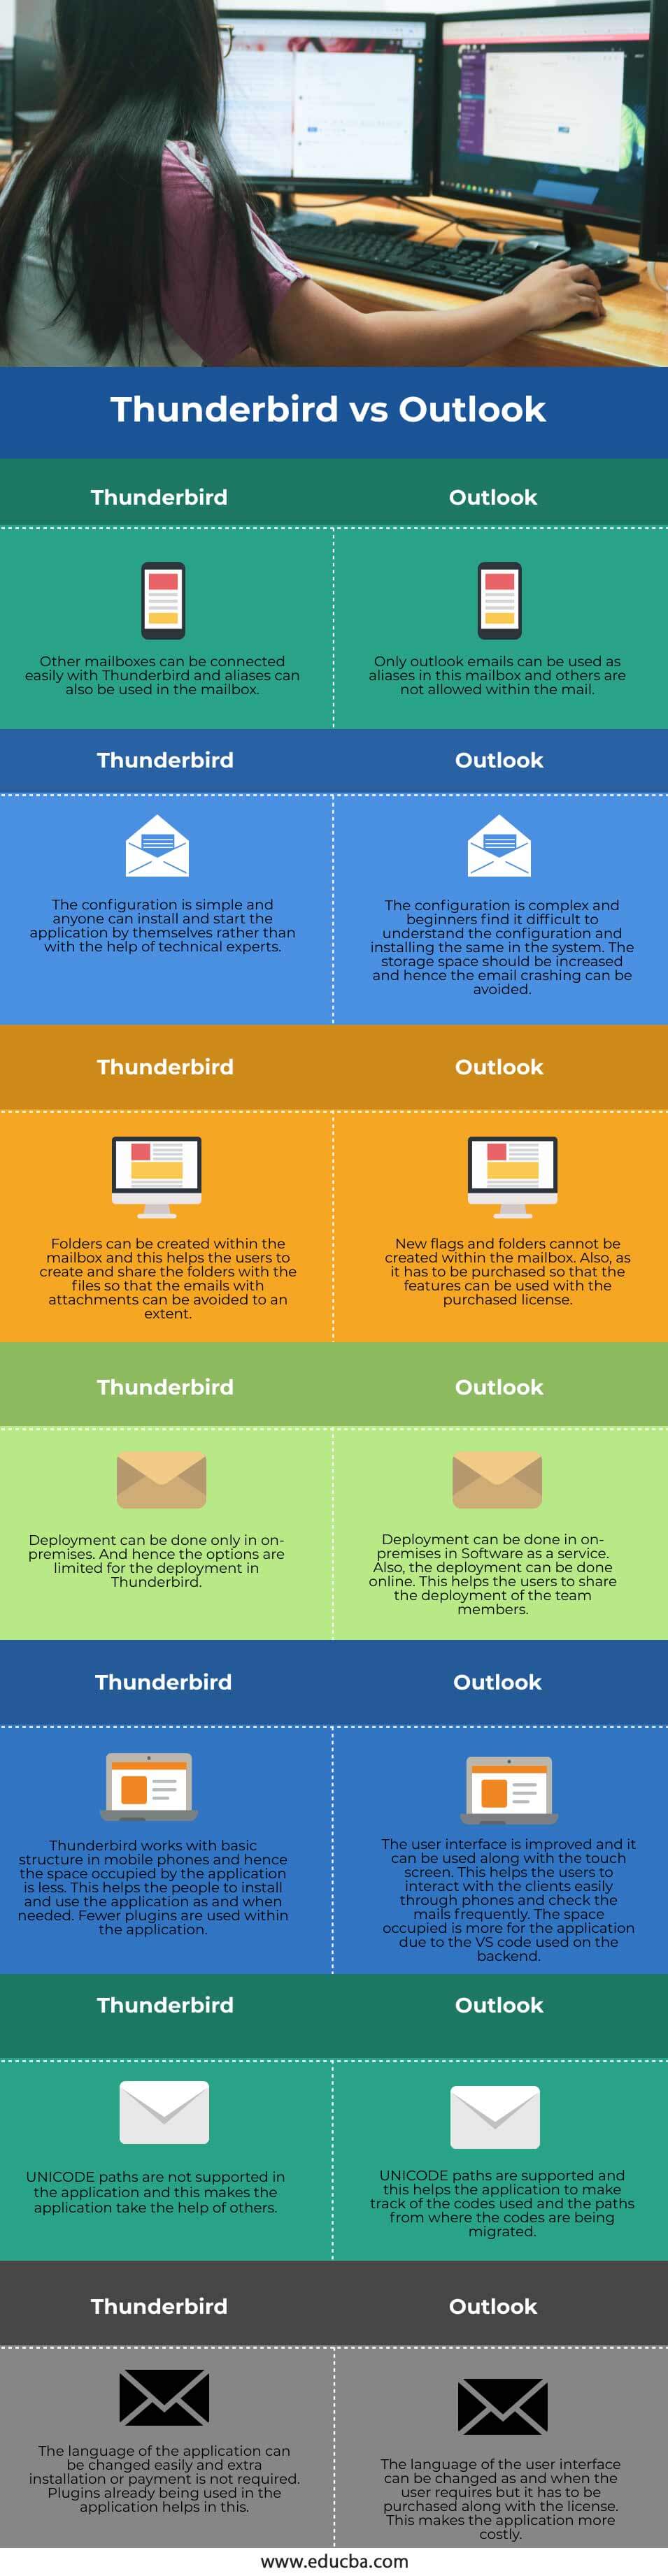 Thunderbird-vs-Outlook-info